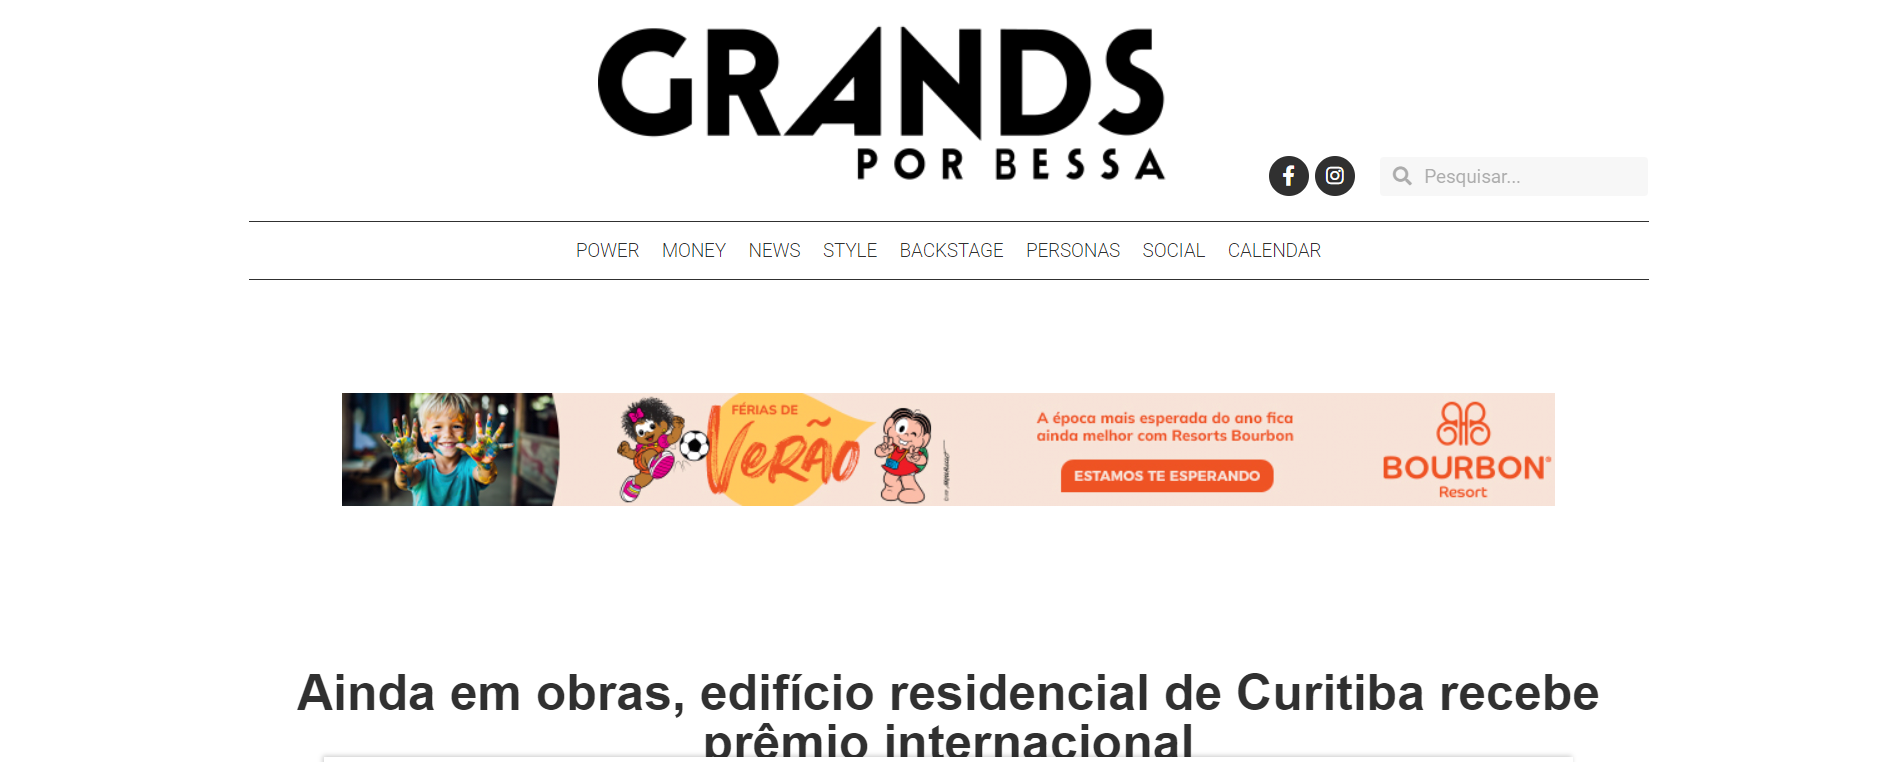 Grands por Bessa: Ainda em obras, edifício residencial de Curitiba recebe prêmio internacional